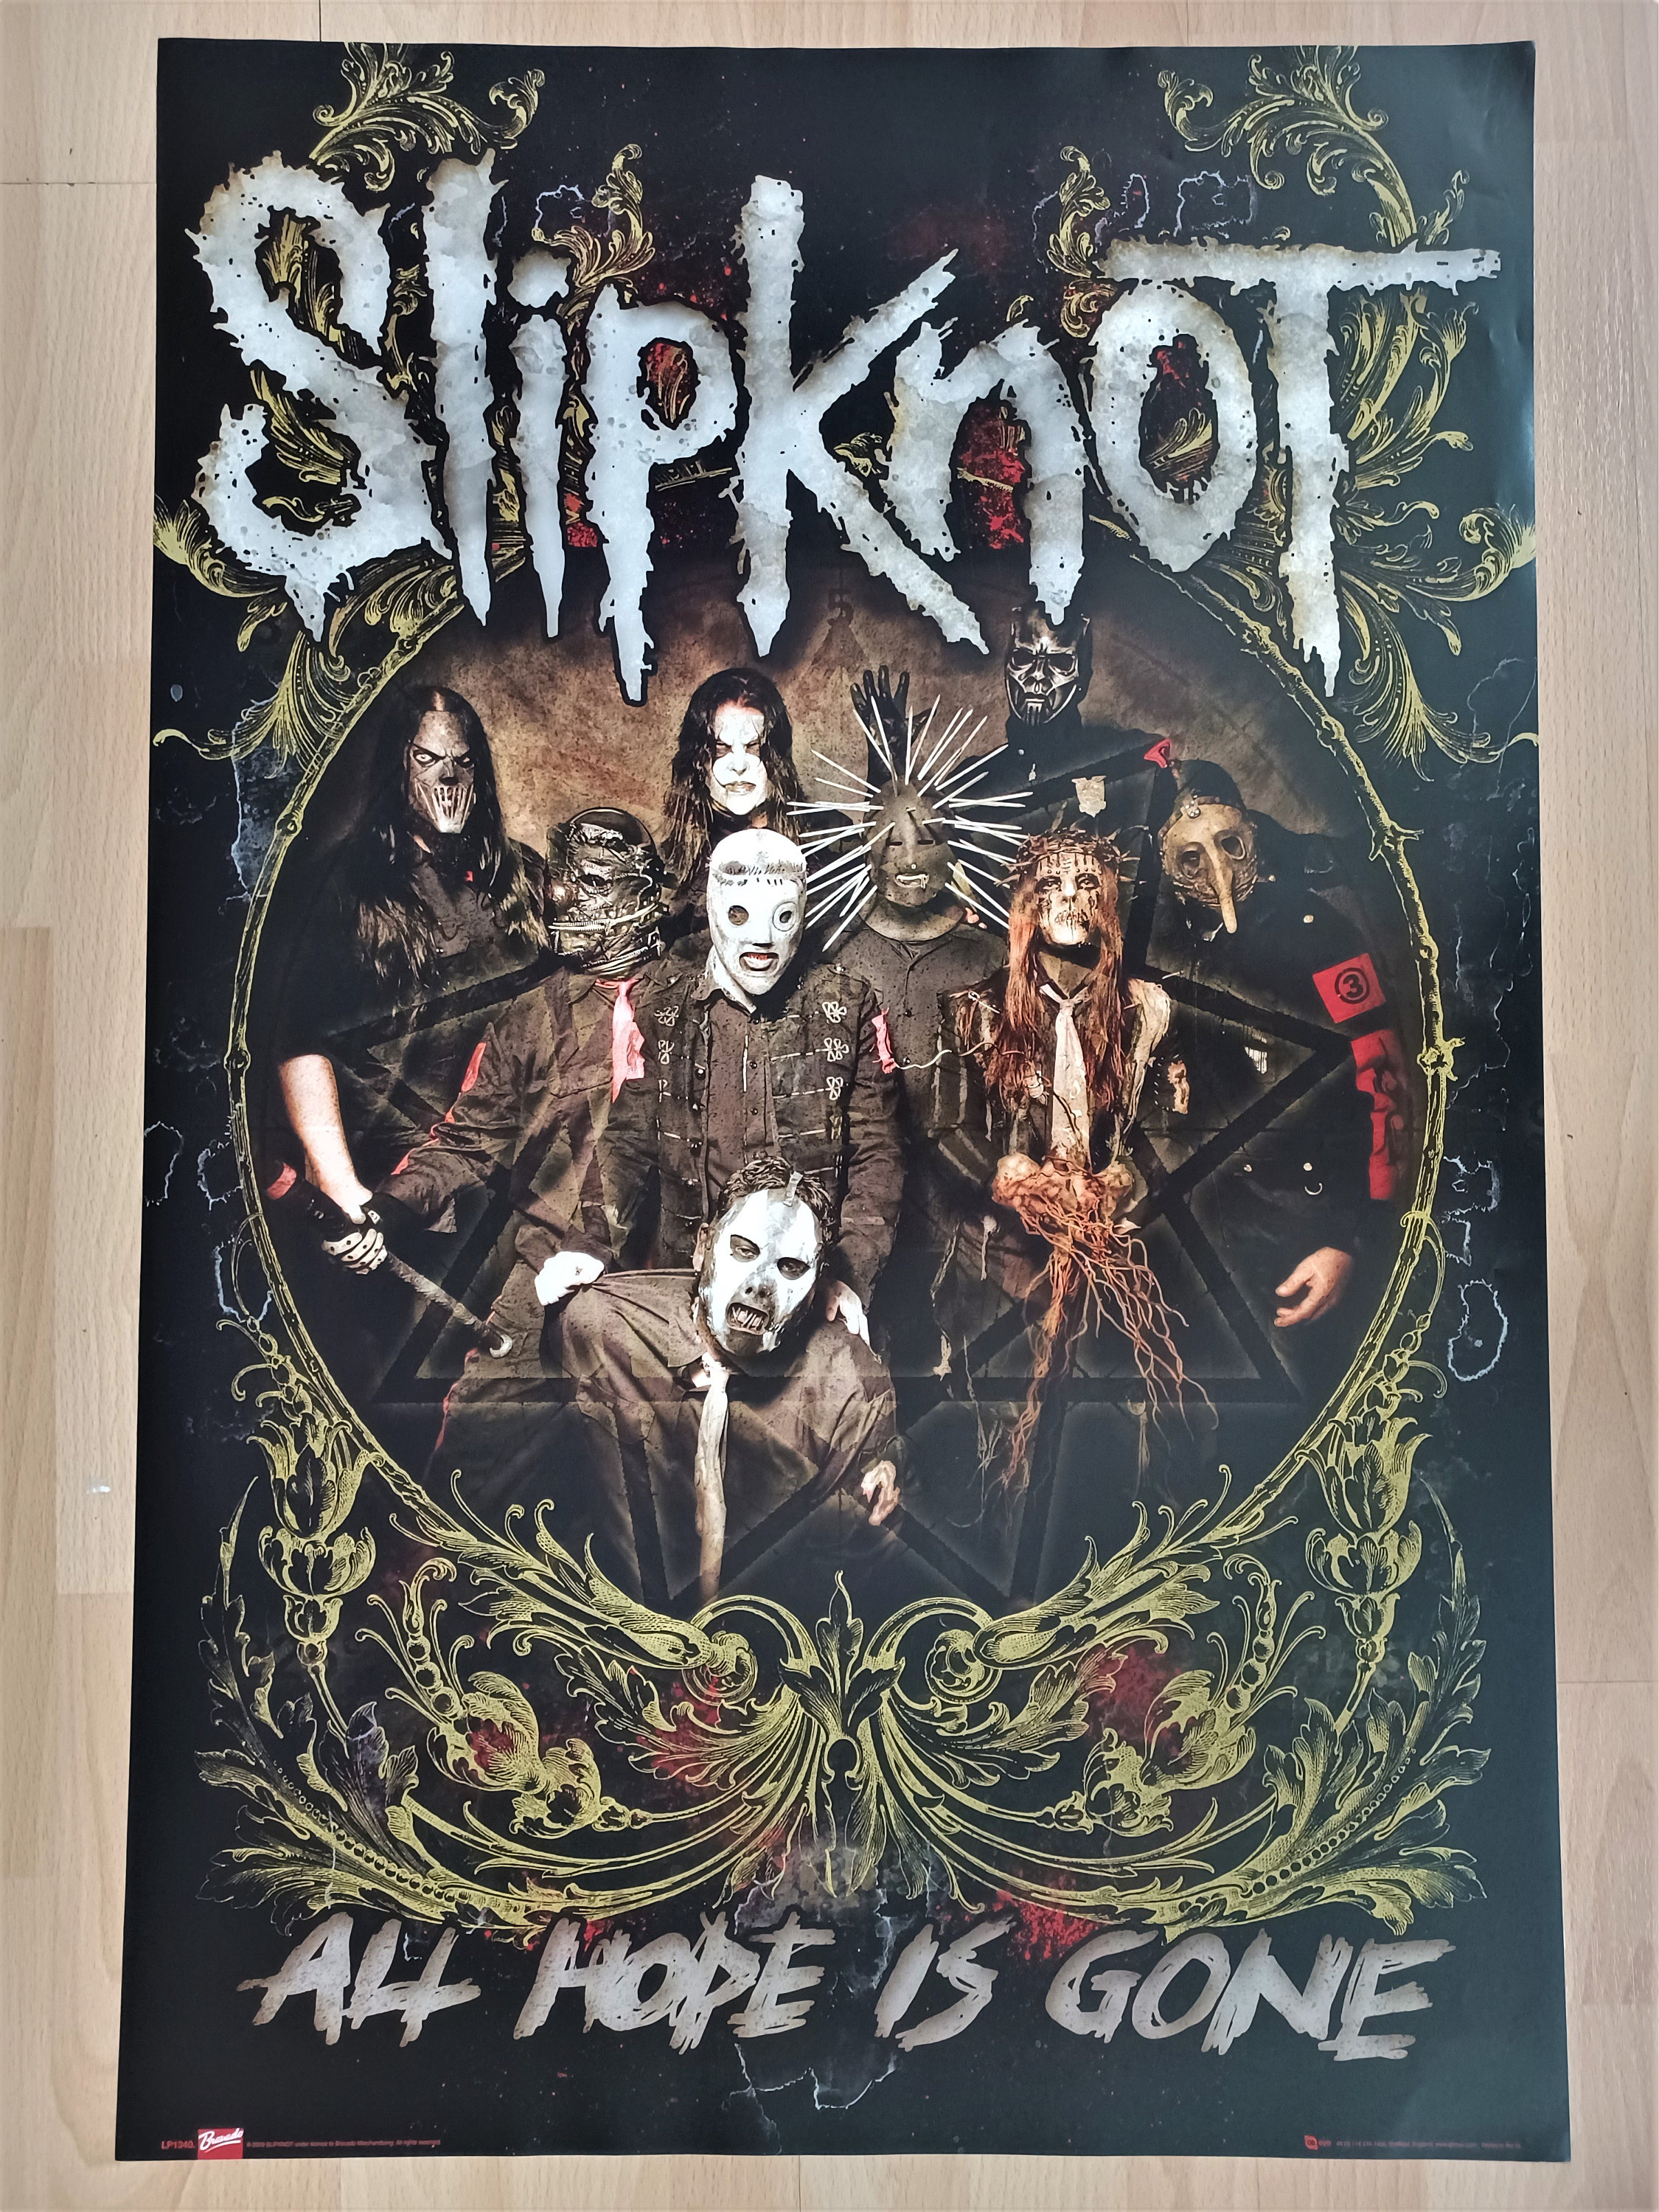 Klappe Blind tillid sekvens Slipknot Authentic Licensed 2009 Poster - Etsy